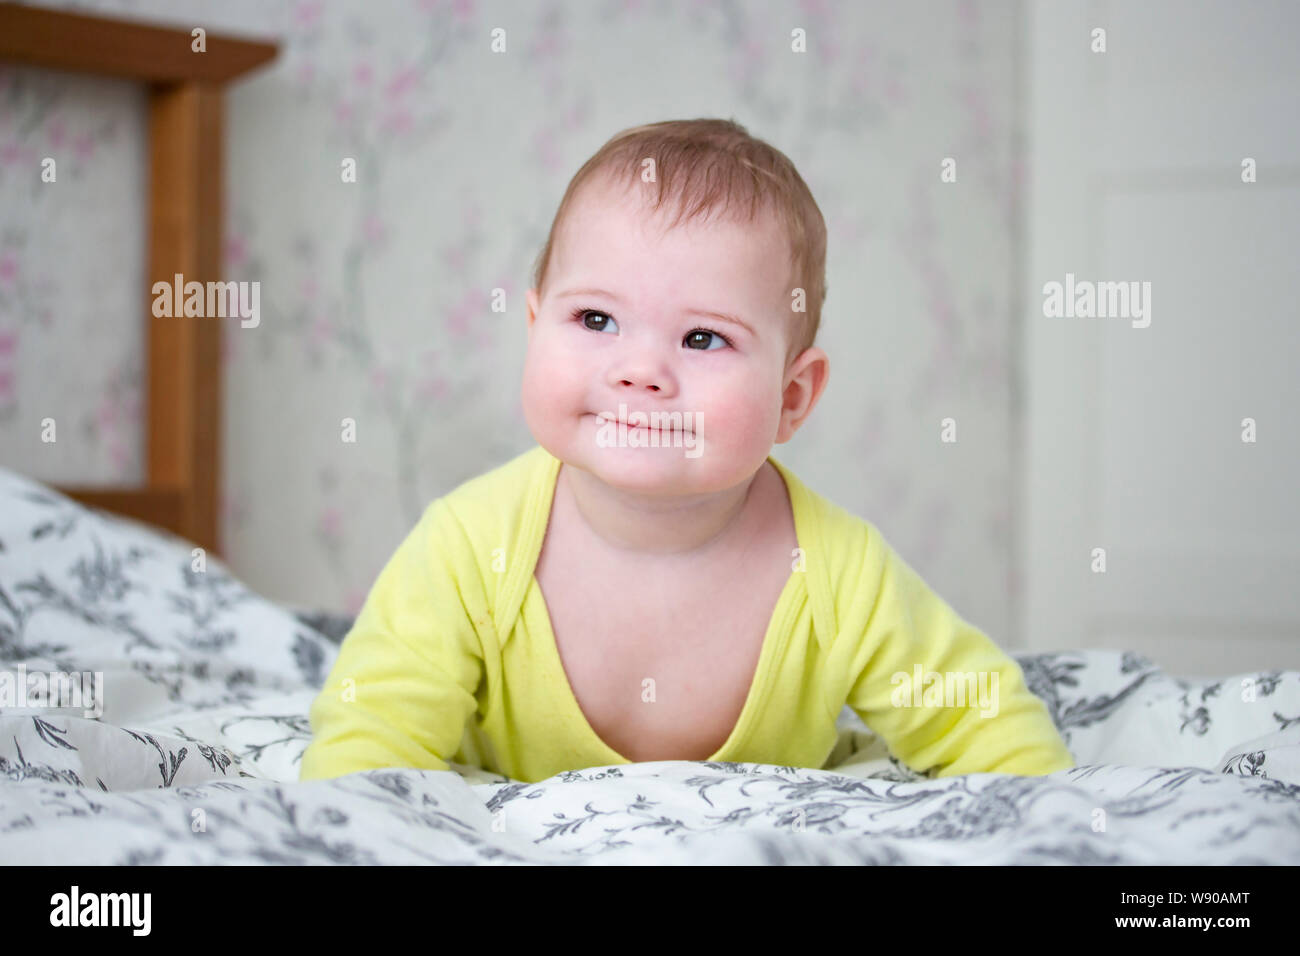 Piccola Europa 7 mesi Baby girl boy in giallo. Carino bambino alza il suo corpo nelle sue braccia, sorride sornione, squints i suoi occhi, giace sul letto Foto Stock